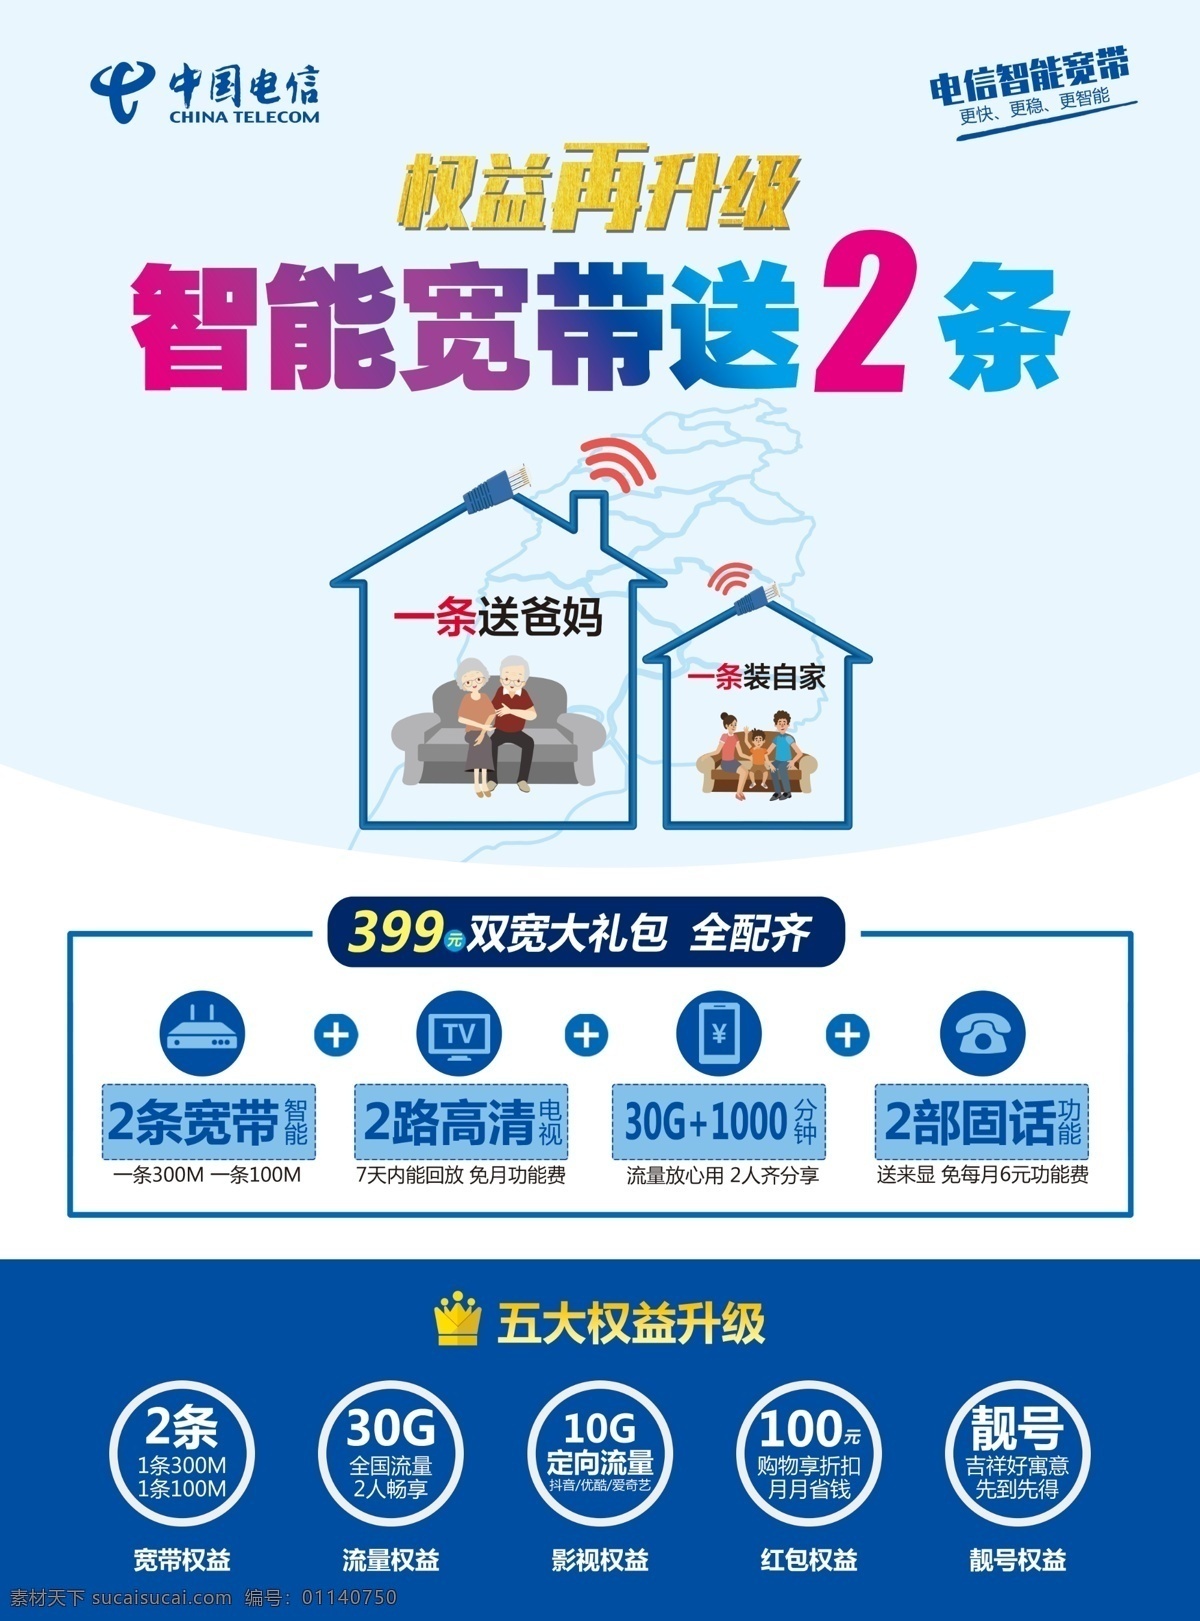 智能宽带图片 智能宽带 电信智能宽带 电信宽带 中国电信 双宽大礼包 电信权益升级